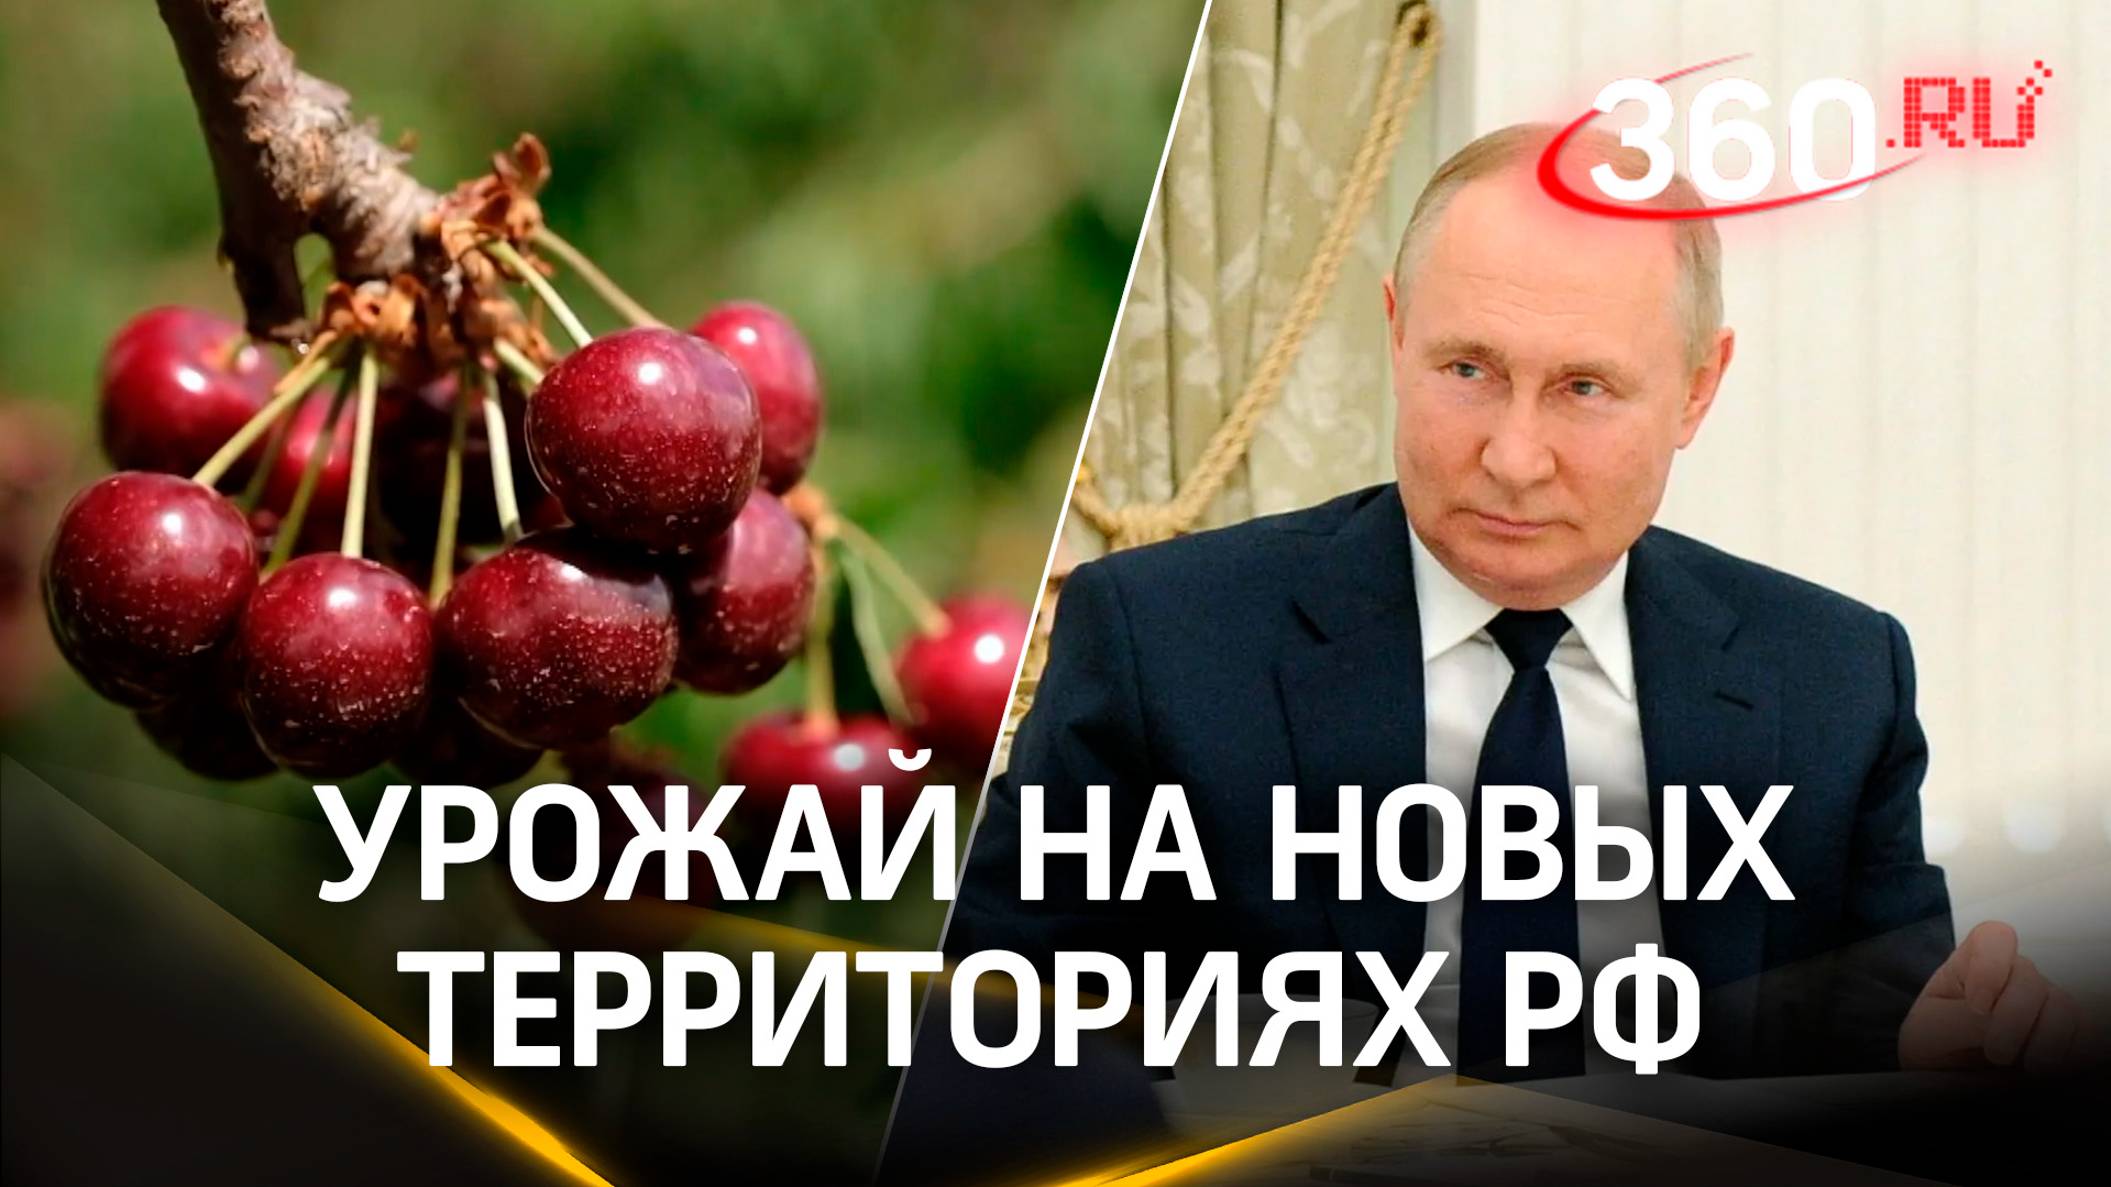 Арбузы Херсона и запорожская черешня: Путину рассказали об урожае на новых территориях